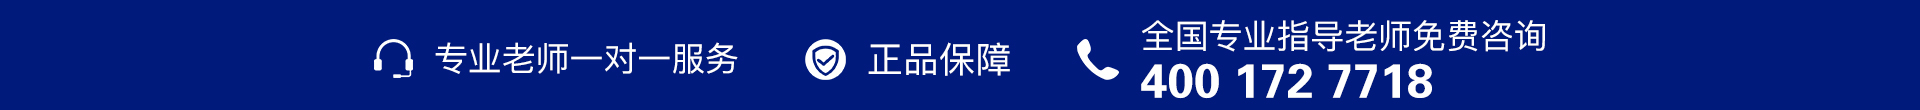 蓝色电话-banner图下方-PC - 副本 (4).jpg